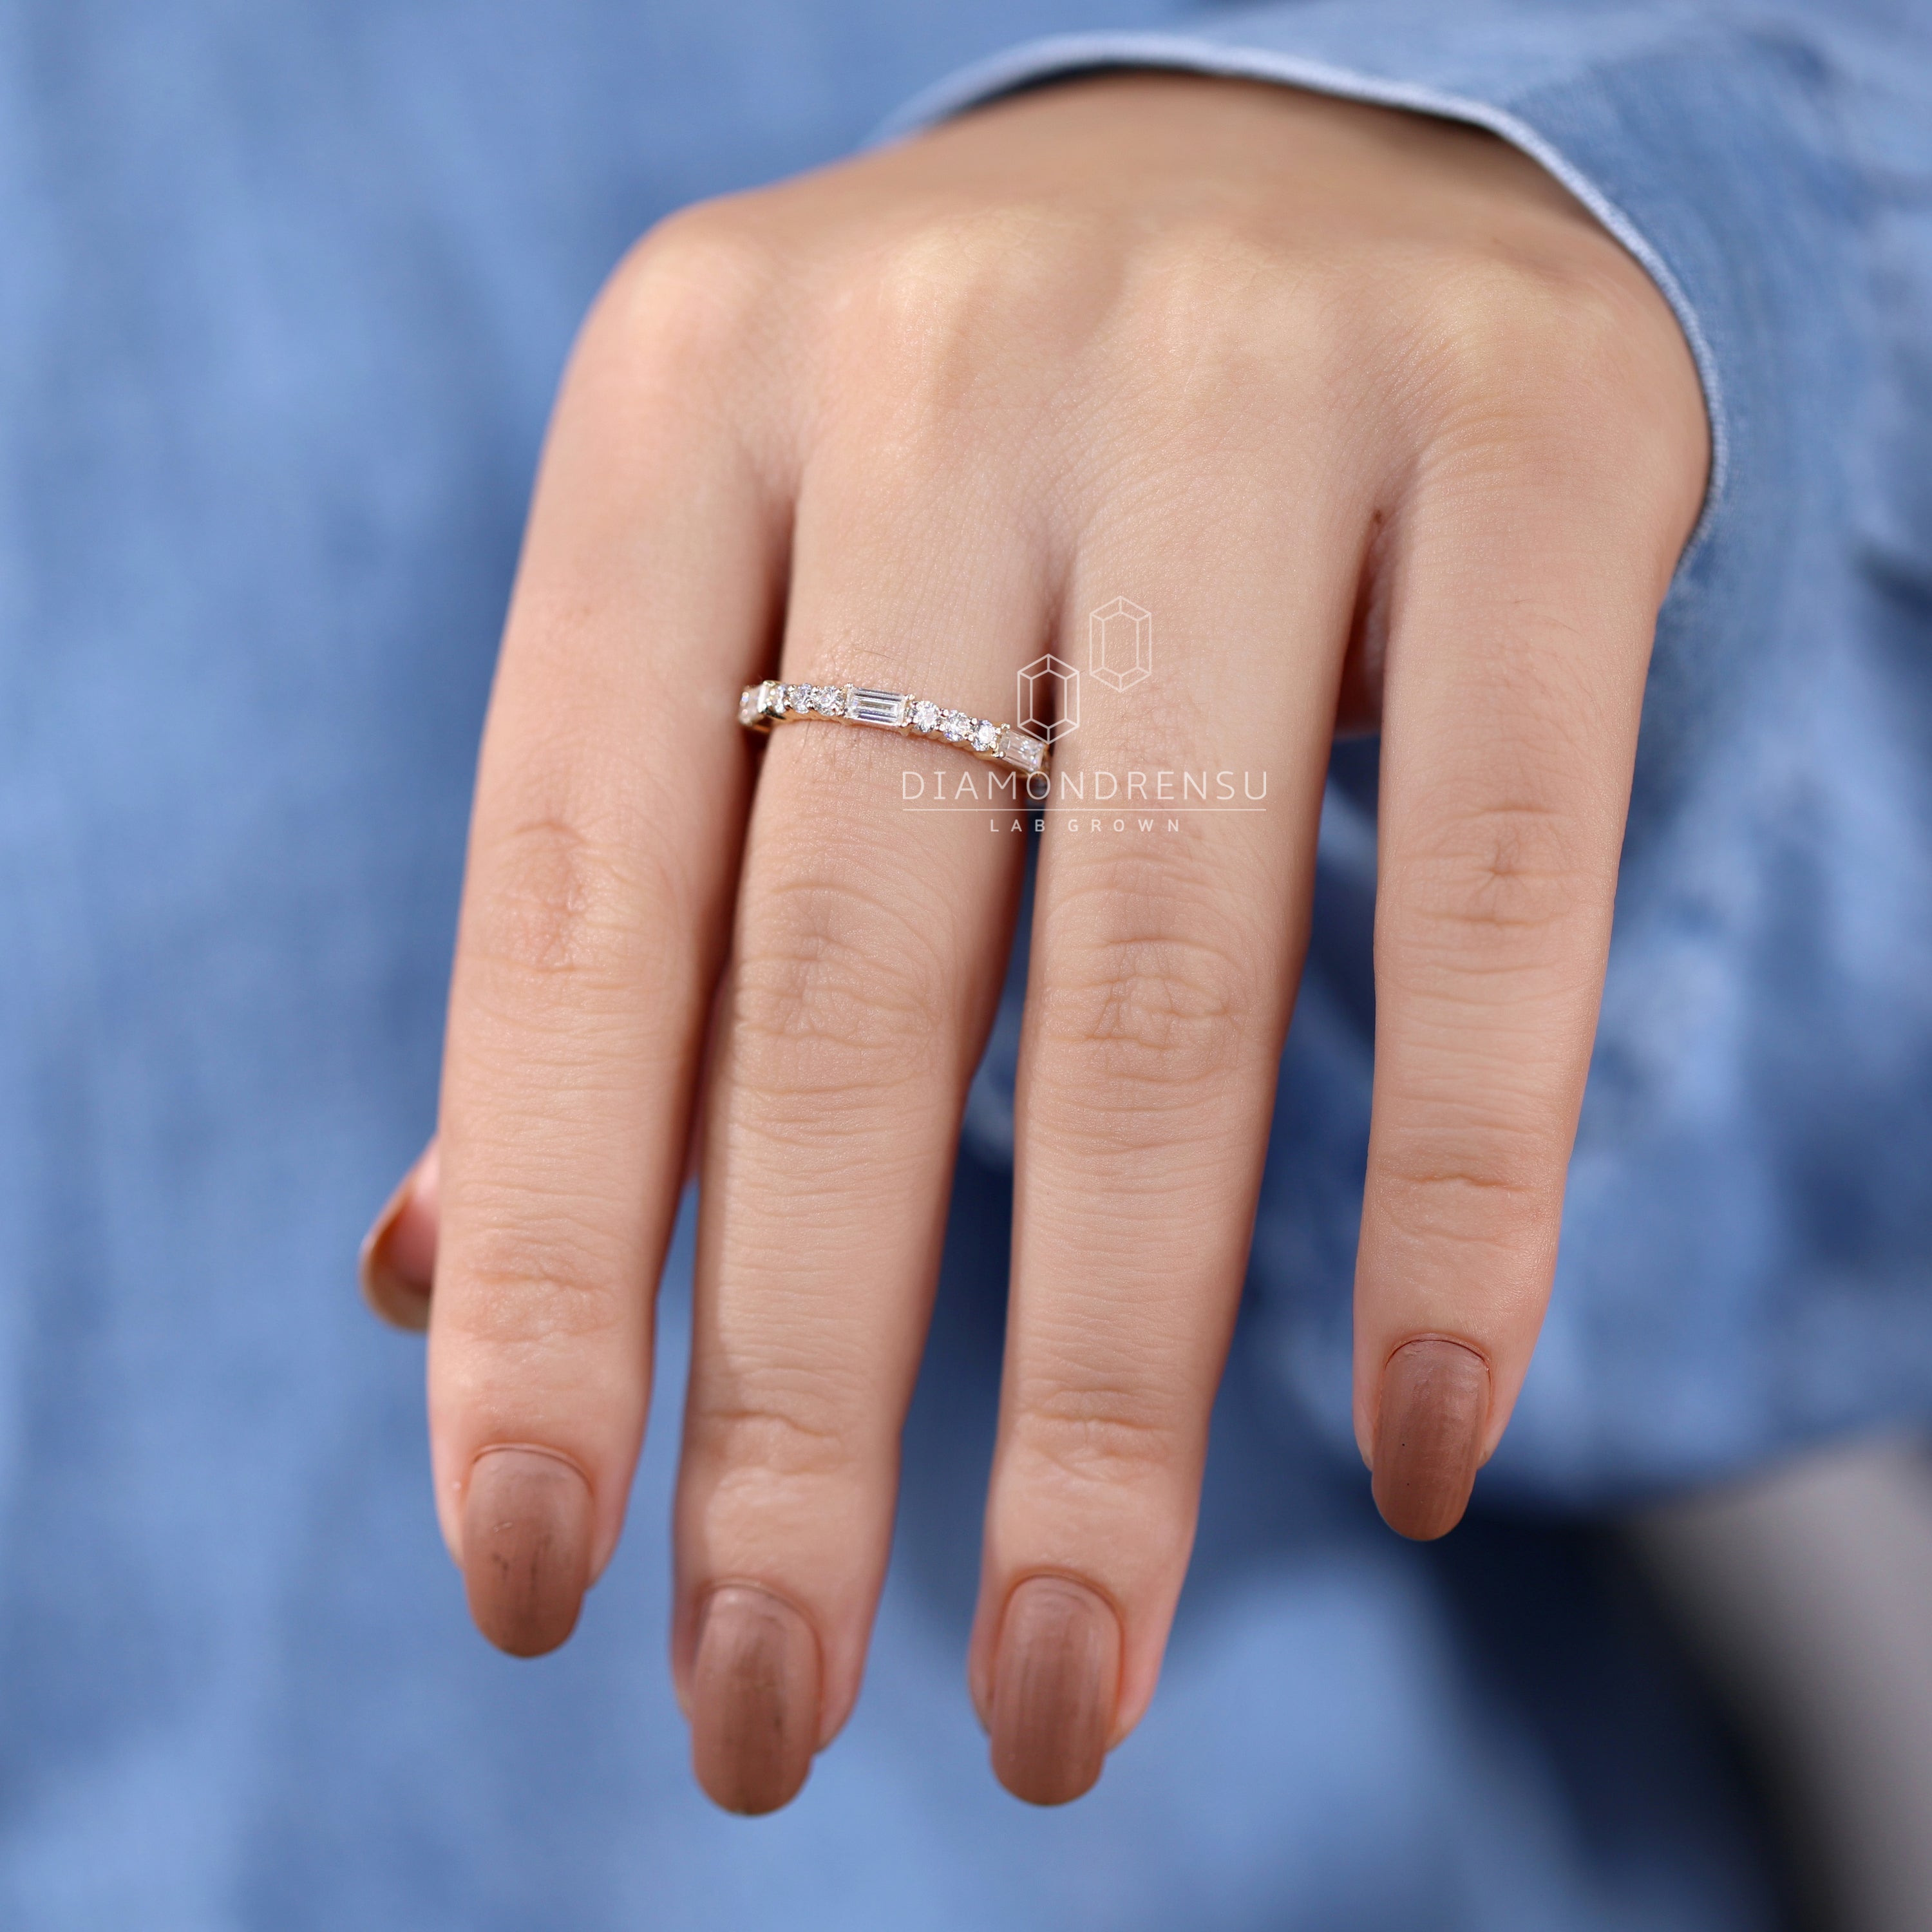 lab grown diamond wedding ring - diamondrensu